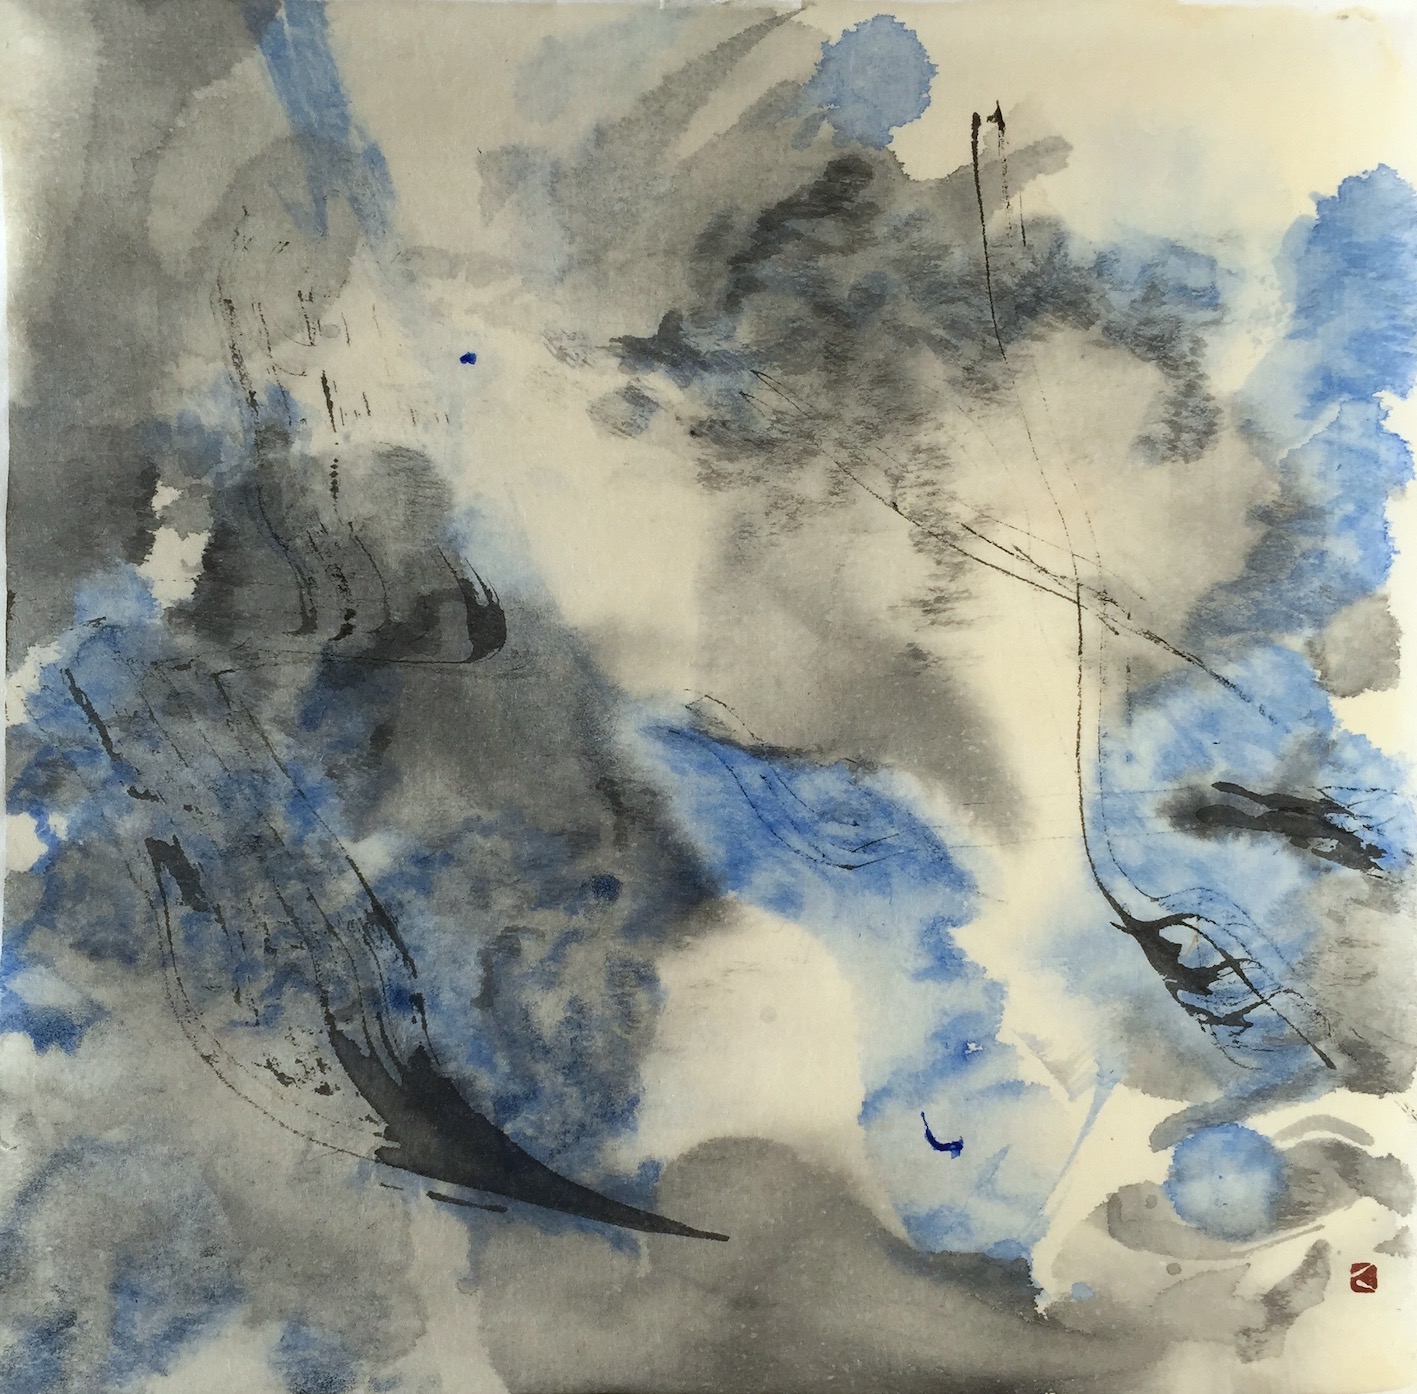 Cloud Rhythms 3 25 X 23 cms Sumi ink, acrylic 雲のリズム 3 墨アクリル　2020